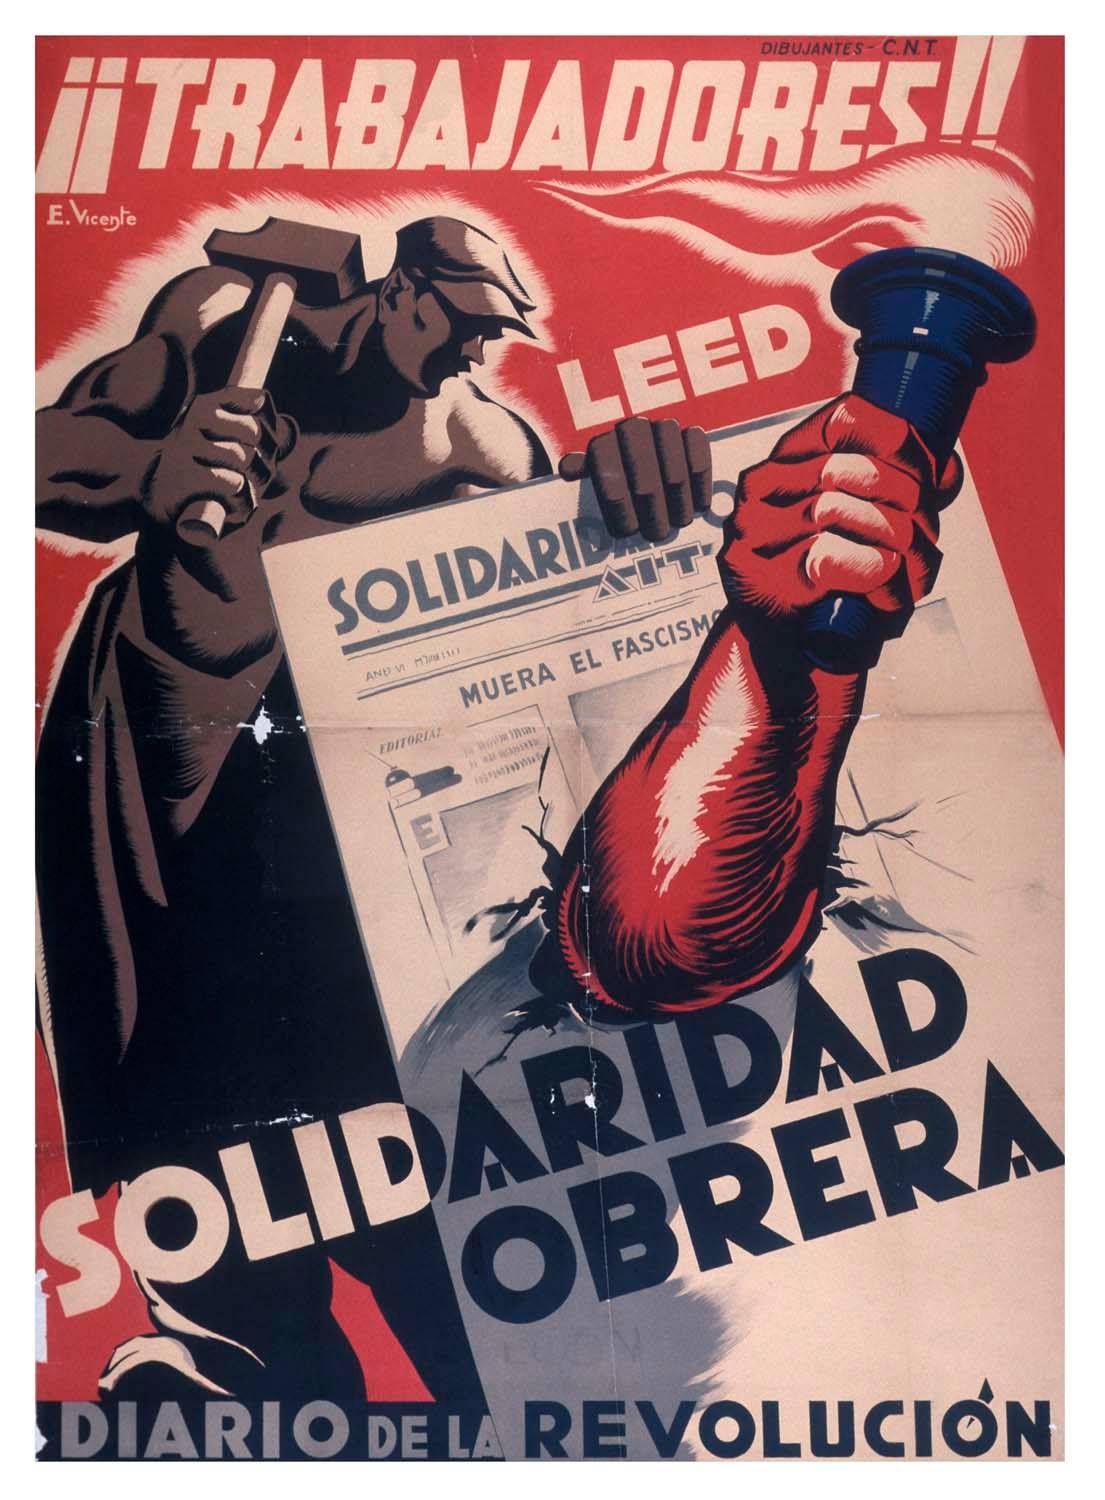 Σαν σήμερα θα κυκλοφορήσει το πρώτο τεύχος της αναρχικής εφημερίδας Solidaridad Obrera